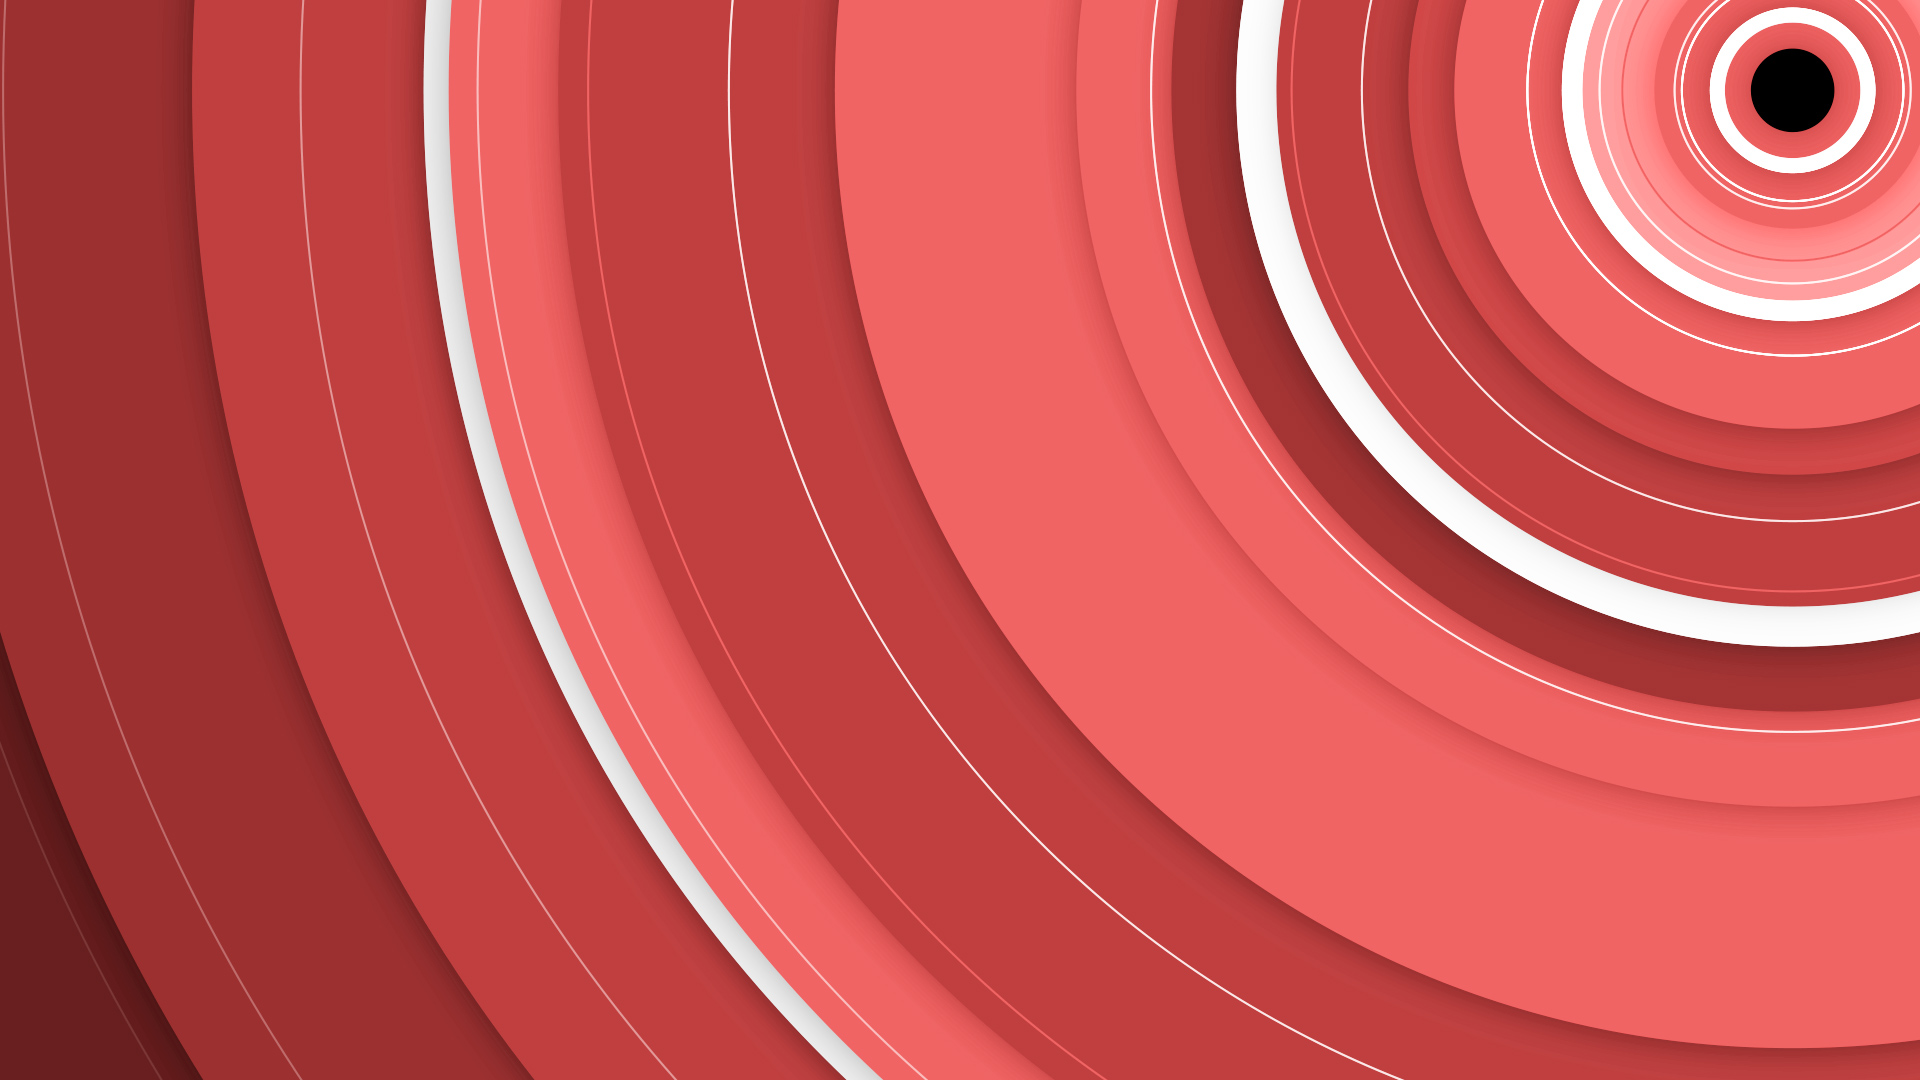 Các mẫu nền x1bg-circles-red được thiết kế với hiệu ứng đẹp mắt và độ sáng tuyệt vời, chúng sẽ đưa những trải nghiệm đầy sắc màu và phong cách cho sản phẩm của bạn.